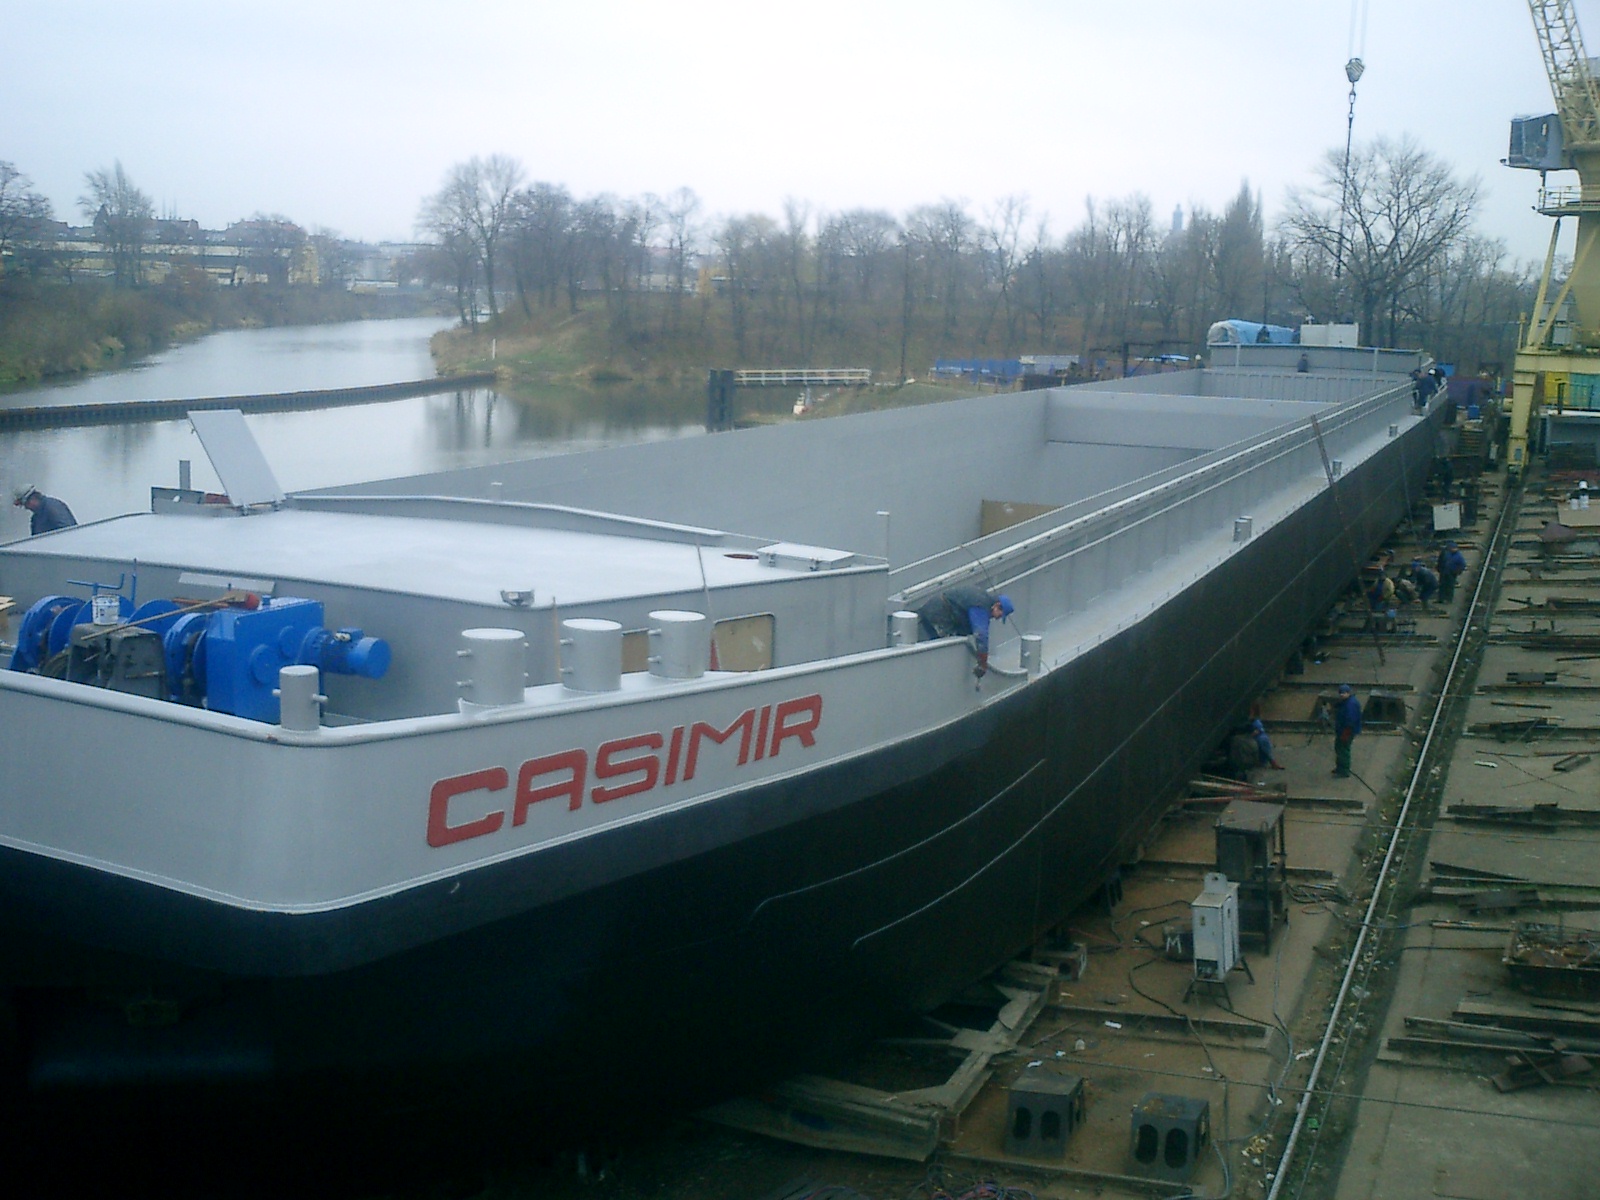 Casimir 003